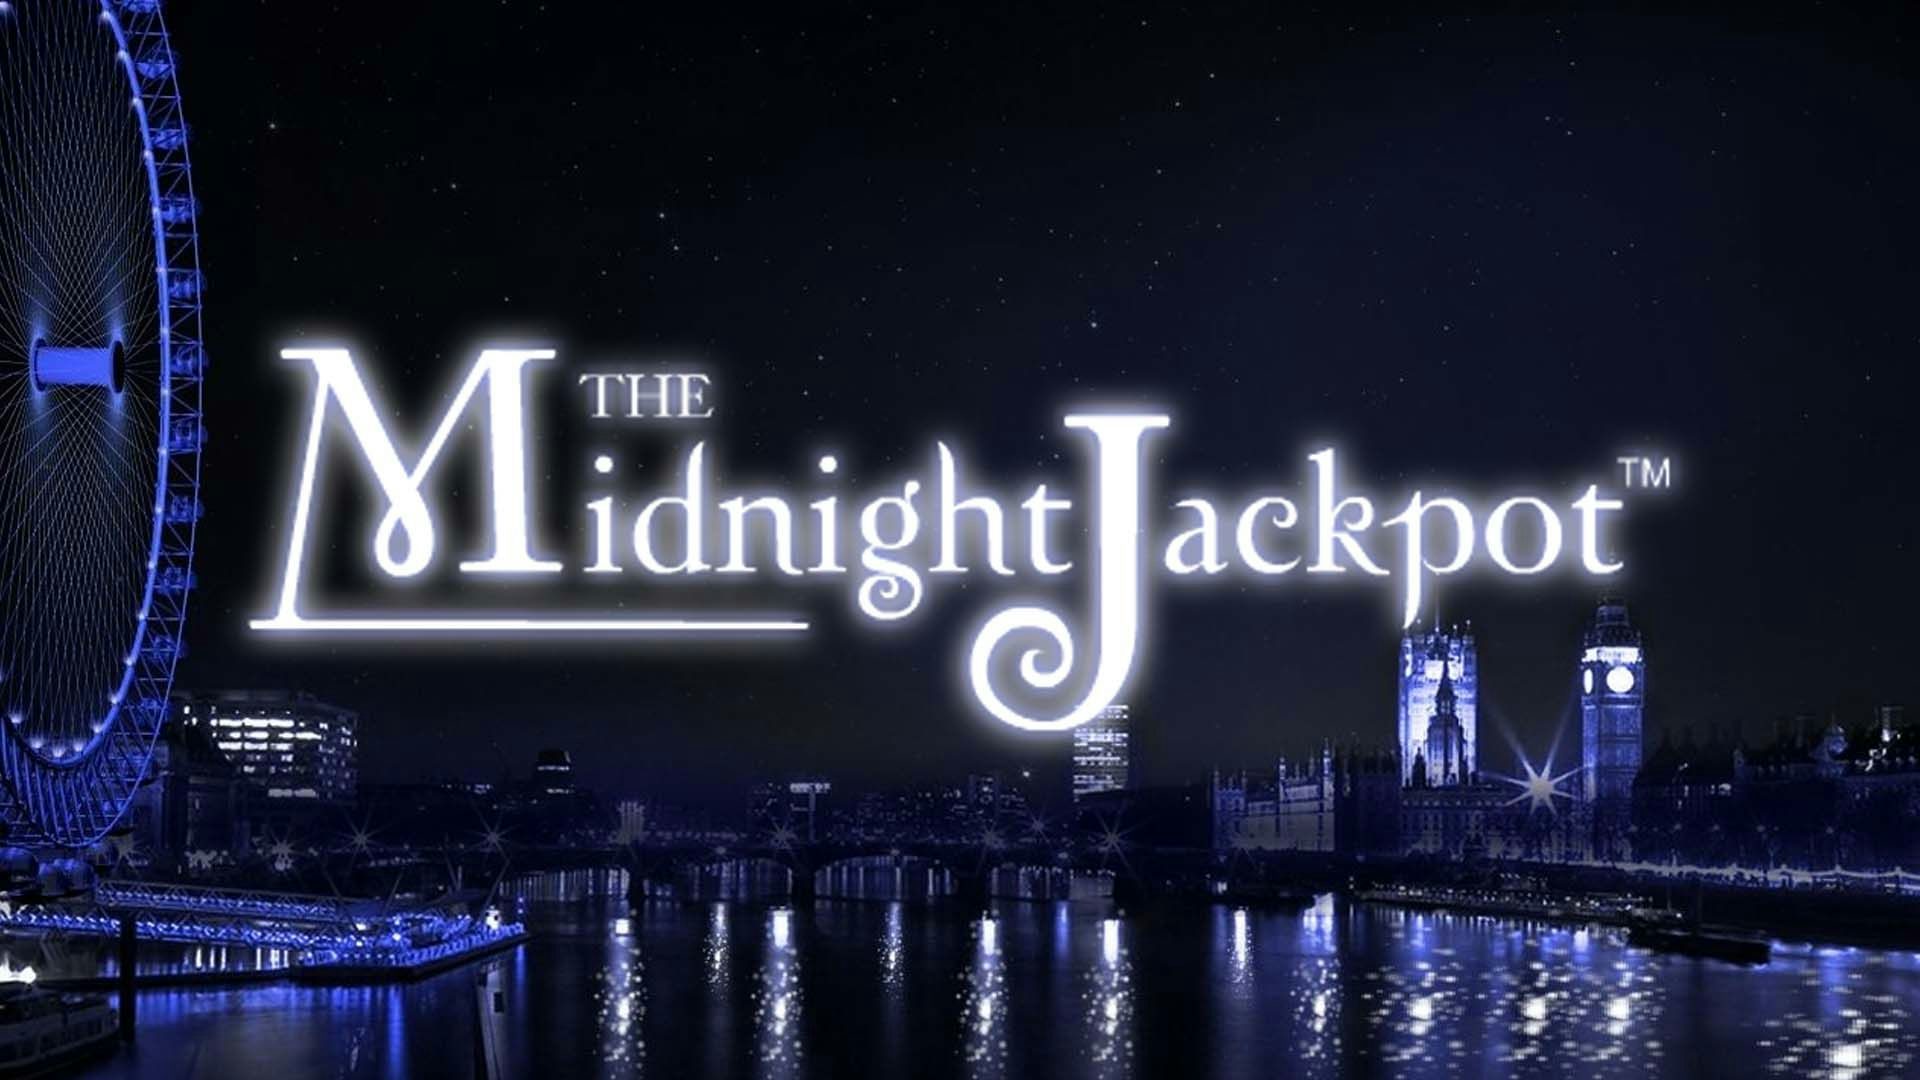 The Midnight Jackpot